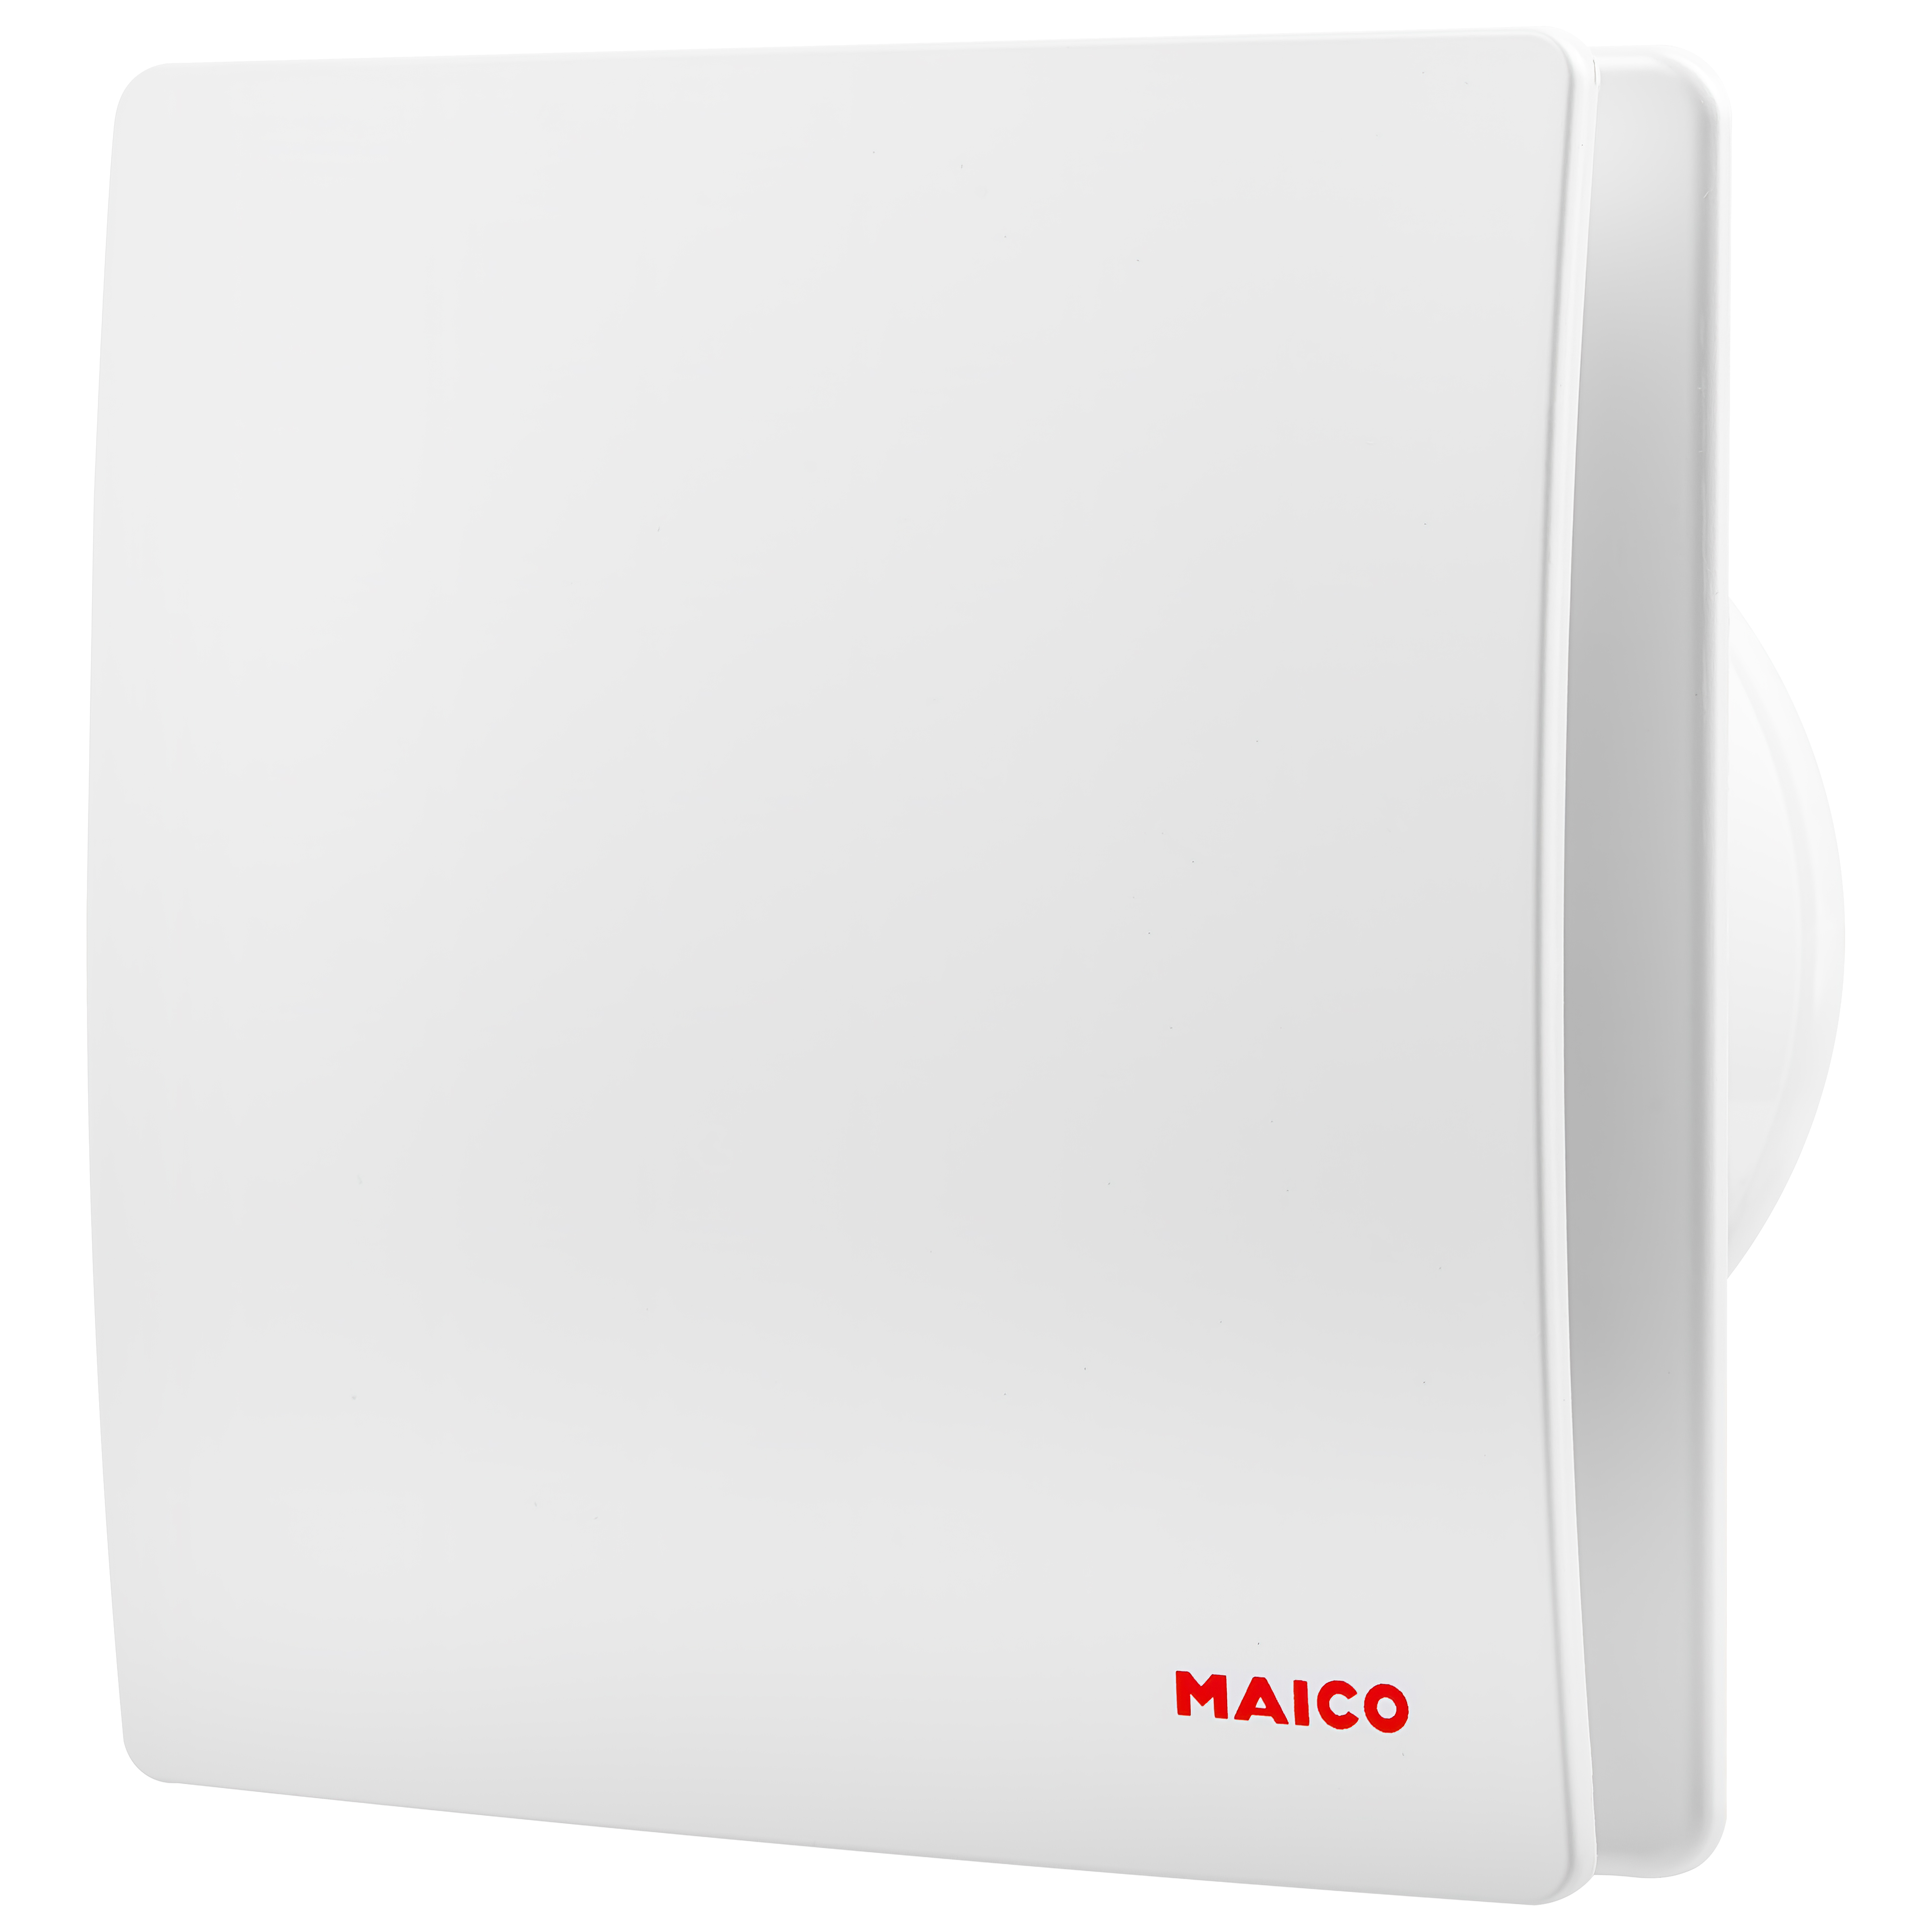 Вентилятор Maico вытяжной Maico AWB 120 C